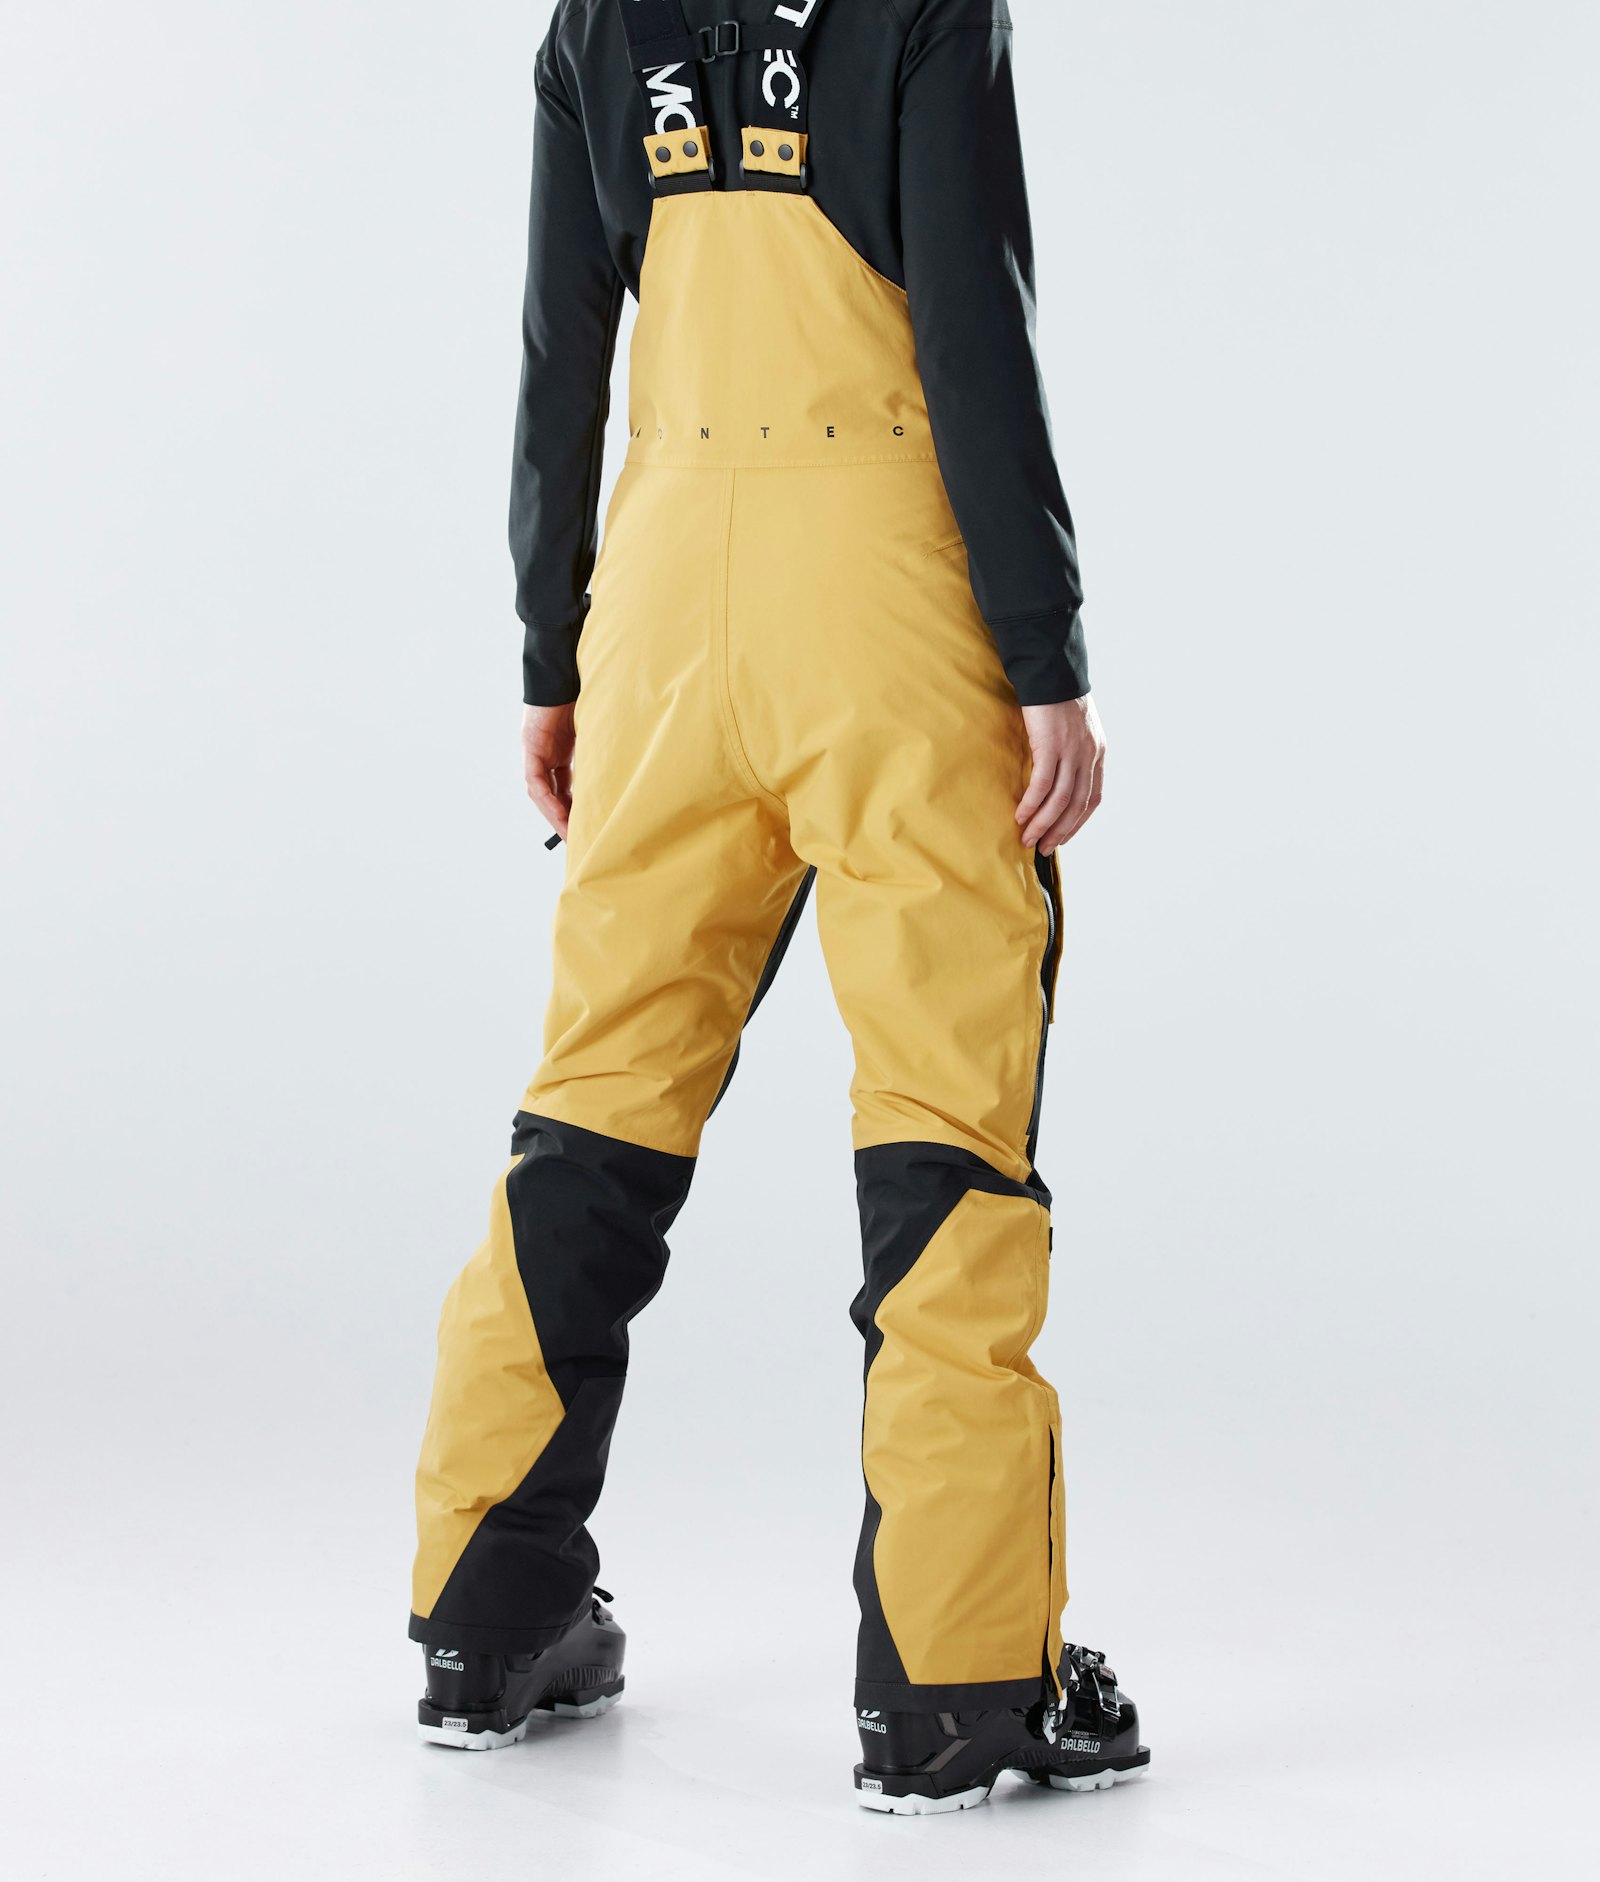 Fawk W 2020 Pantalon de Ski Femme Yellow/Black